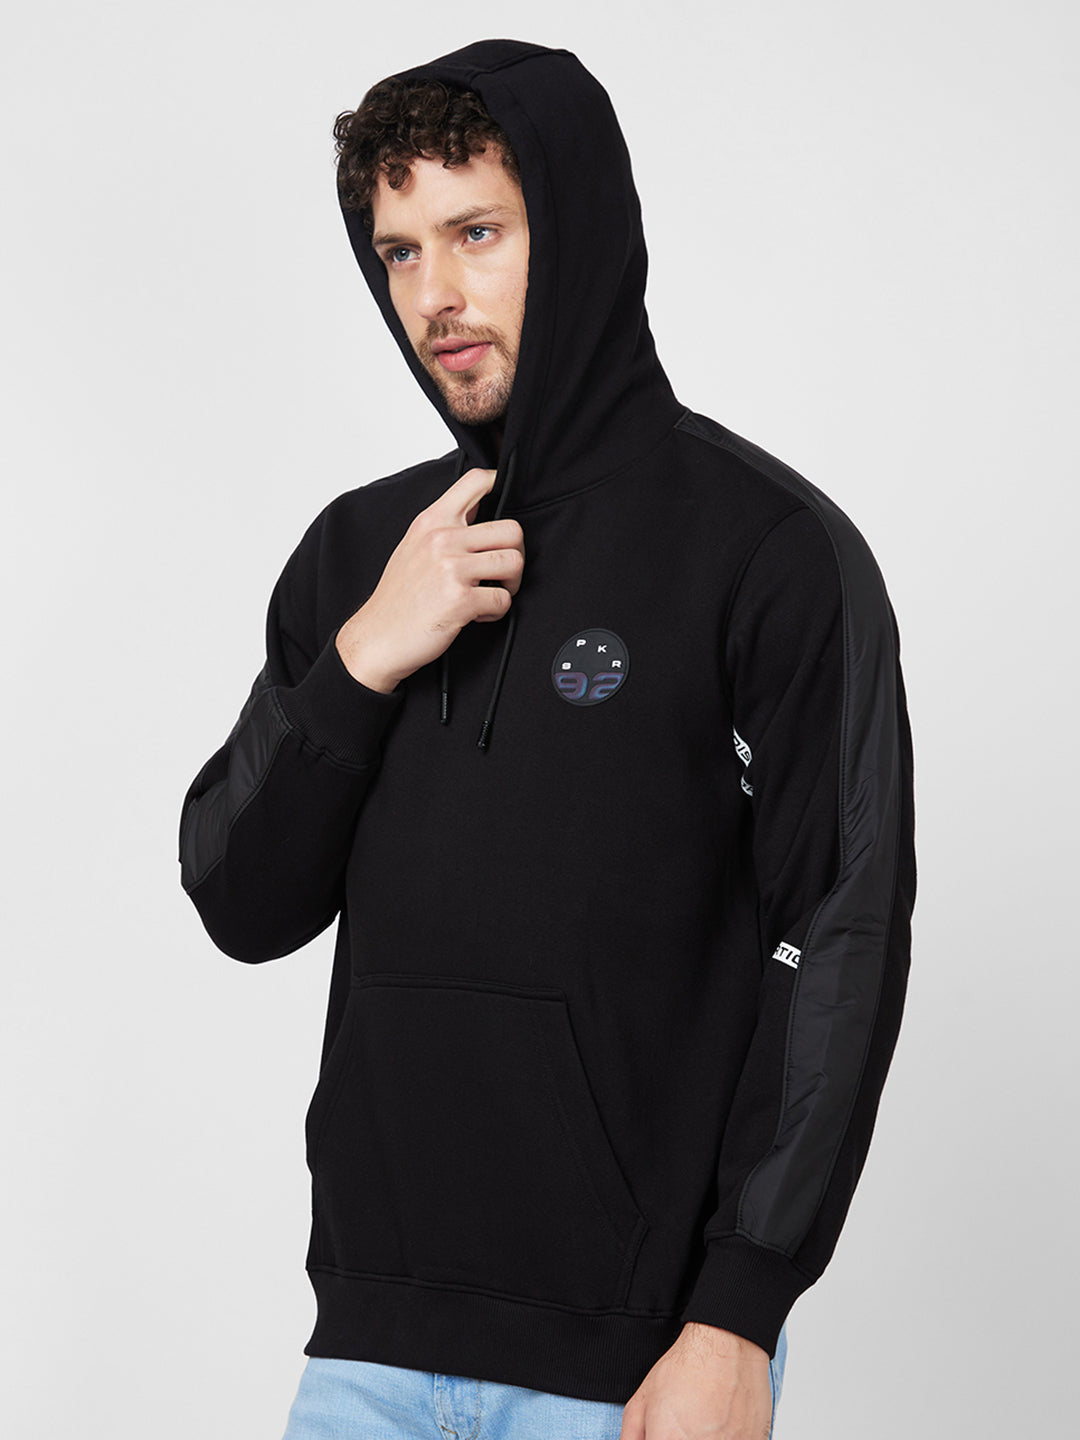 Spykar Hooded Full Sleeve Black Sweatshirt For Men